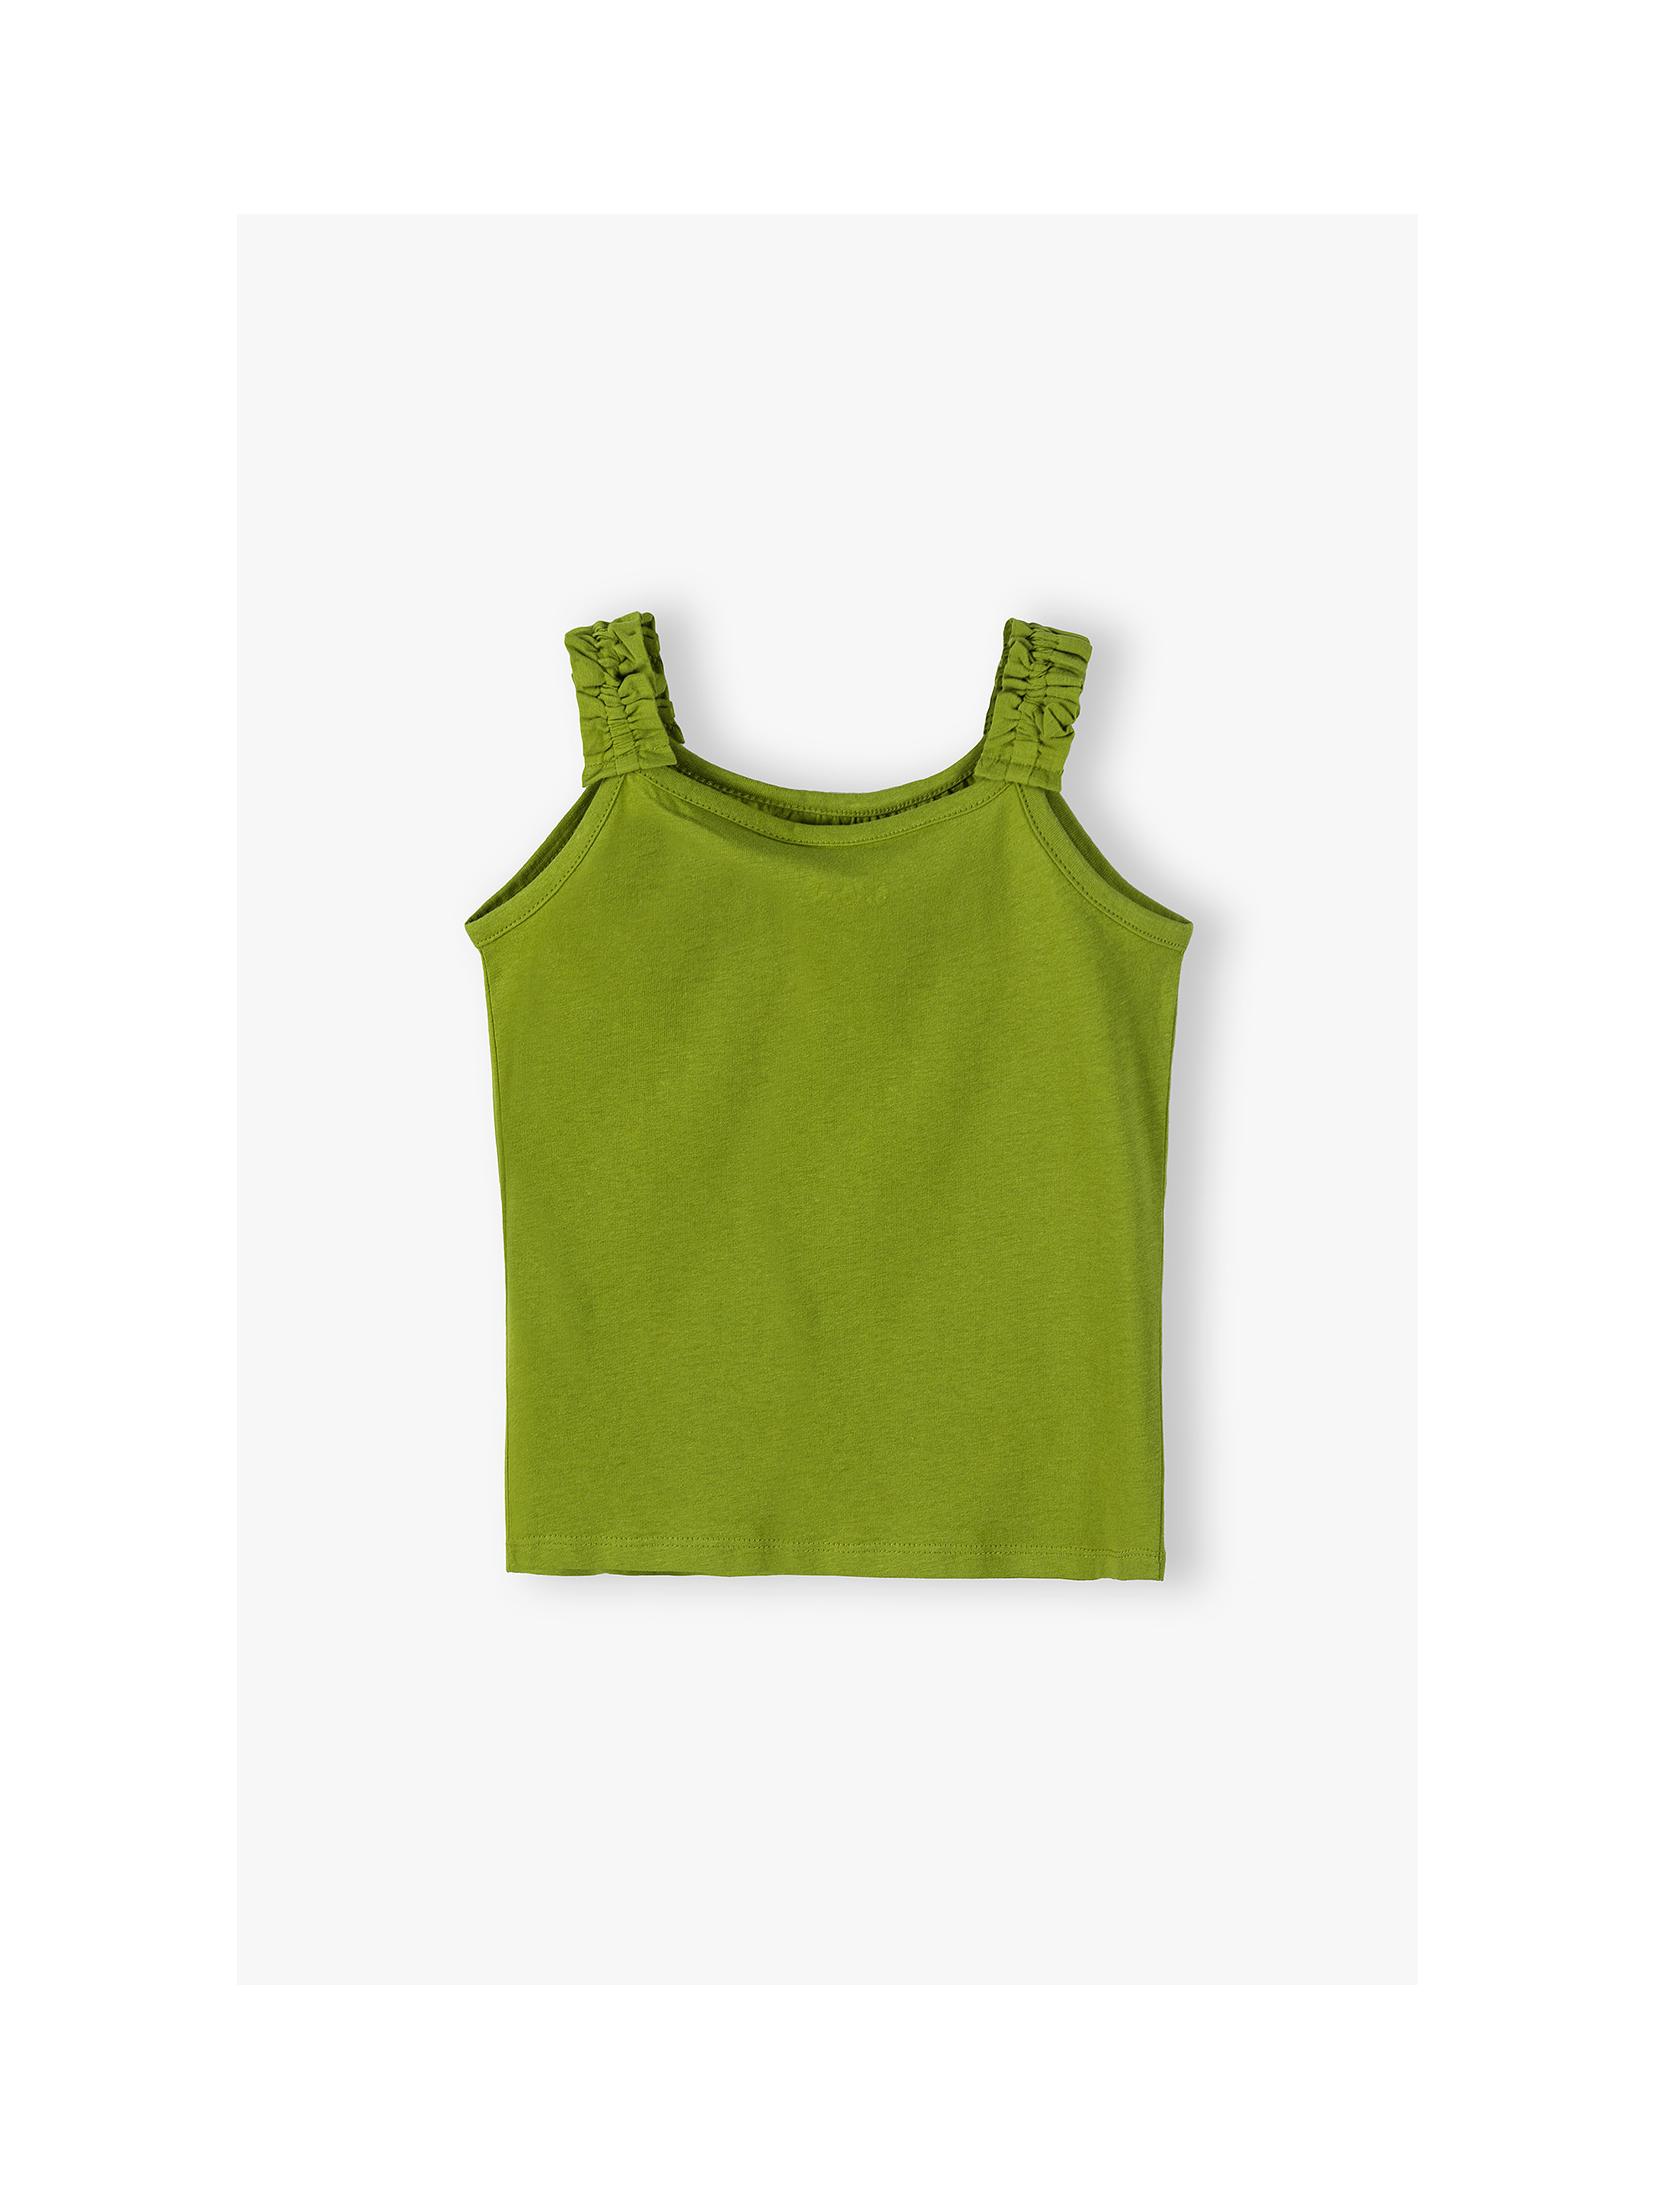 Bawełniany T-shirt dla dziewczynki - zielony z motylkiem